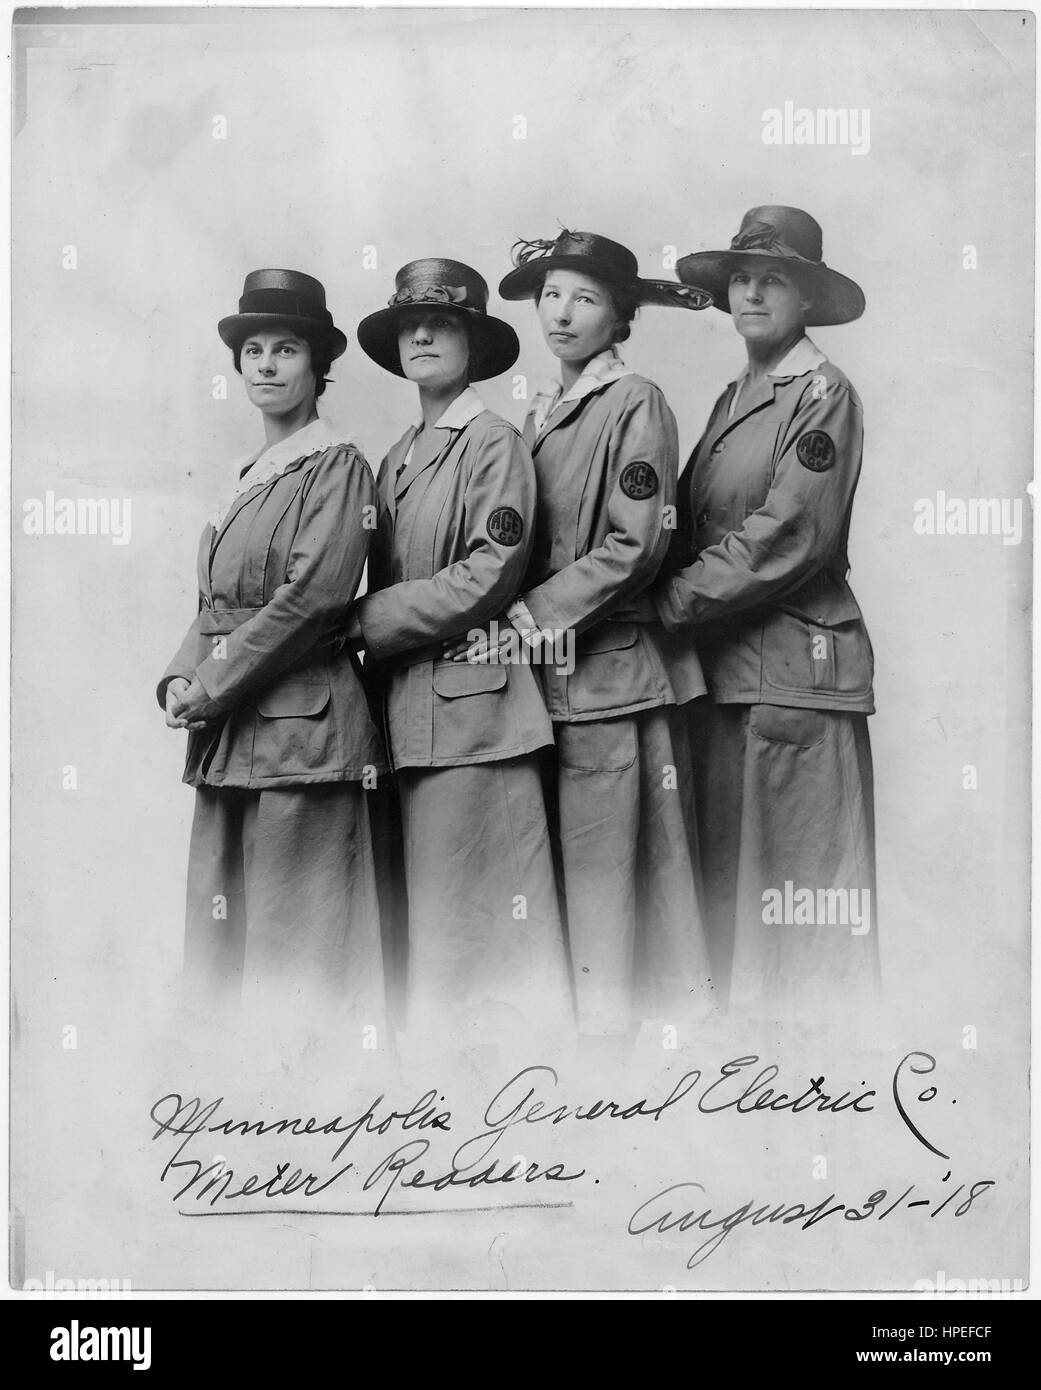 Fotografia di quattro donne che lavoravano come metro di lettori per il Minneapolis General Electric Company, Minneapolis, Minnesota, Agosto 31, 1918. Immagine cortesia US National Archives. Foto Stock